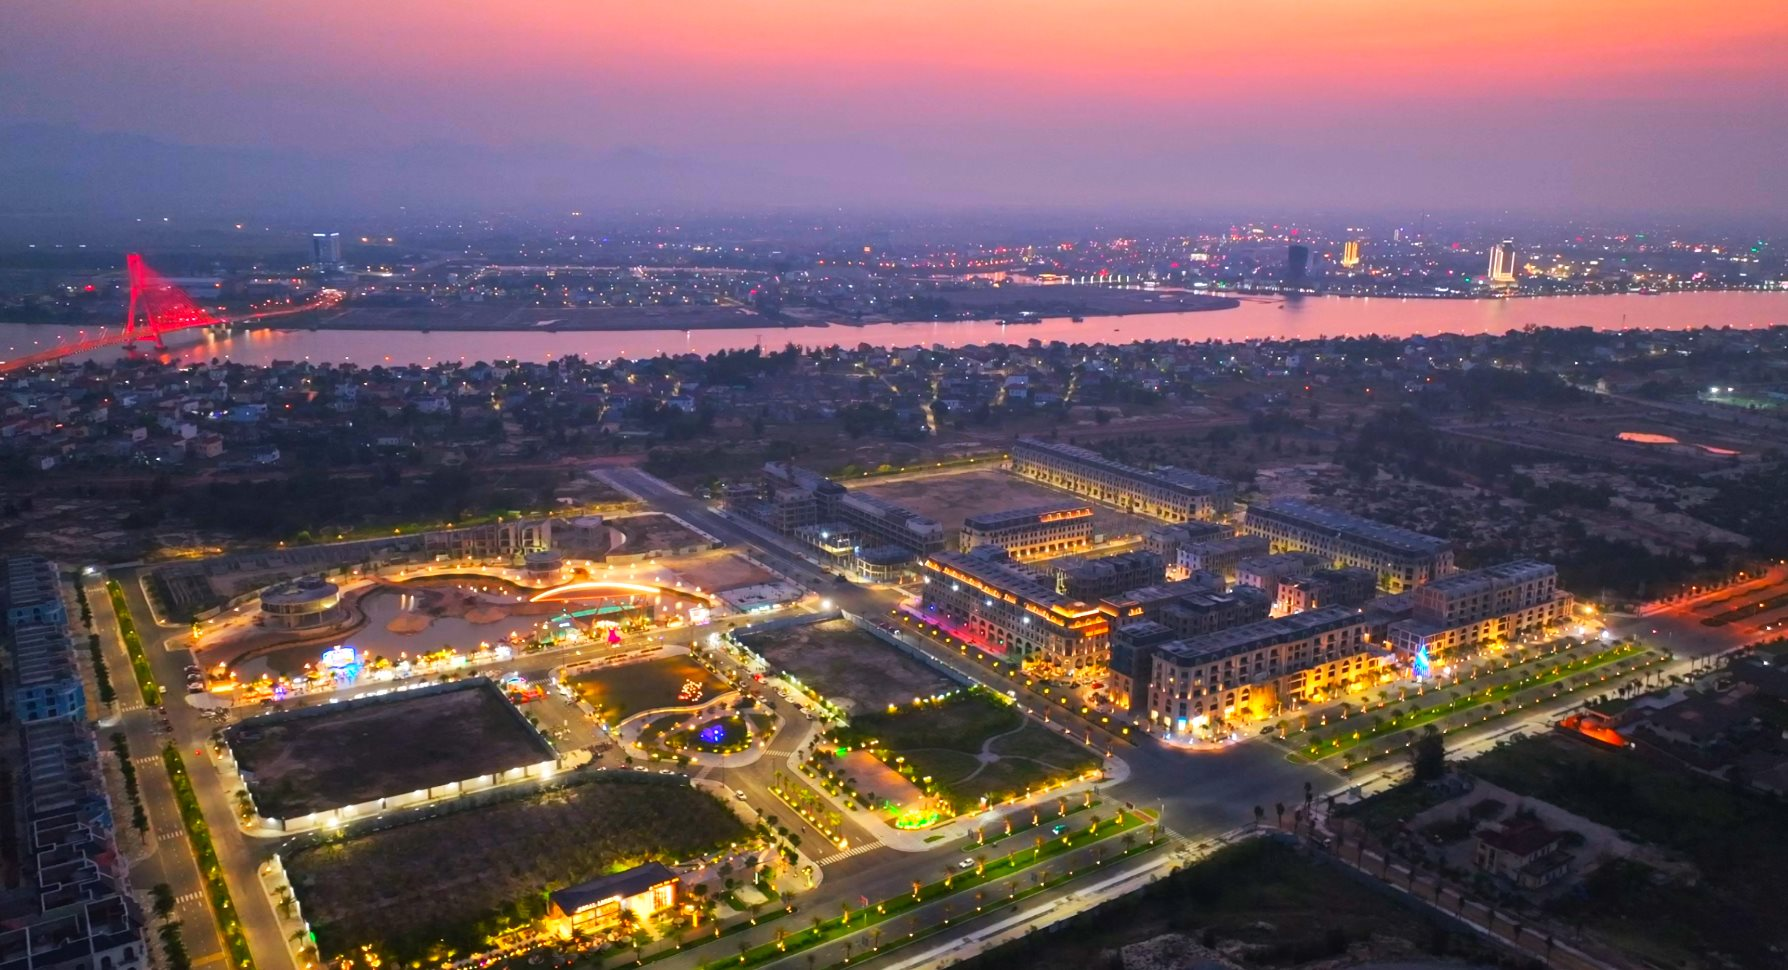 Các tuyến phố đi bộ tại Regal Legend và những tính hiệu đáng mừng cho kinh tế đêm Quảng Bình - Viet Nam Smart City